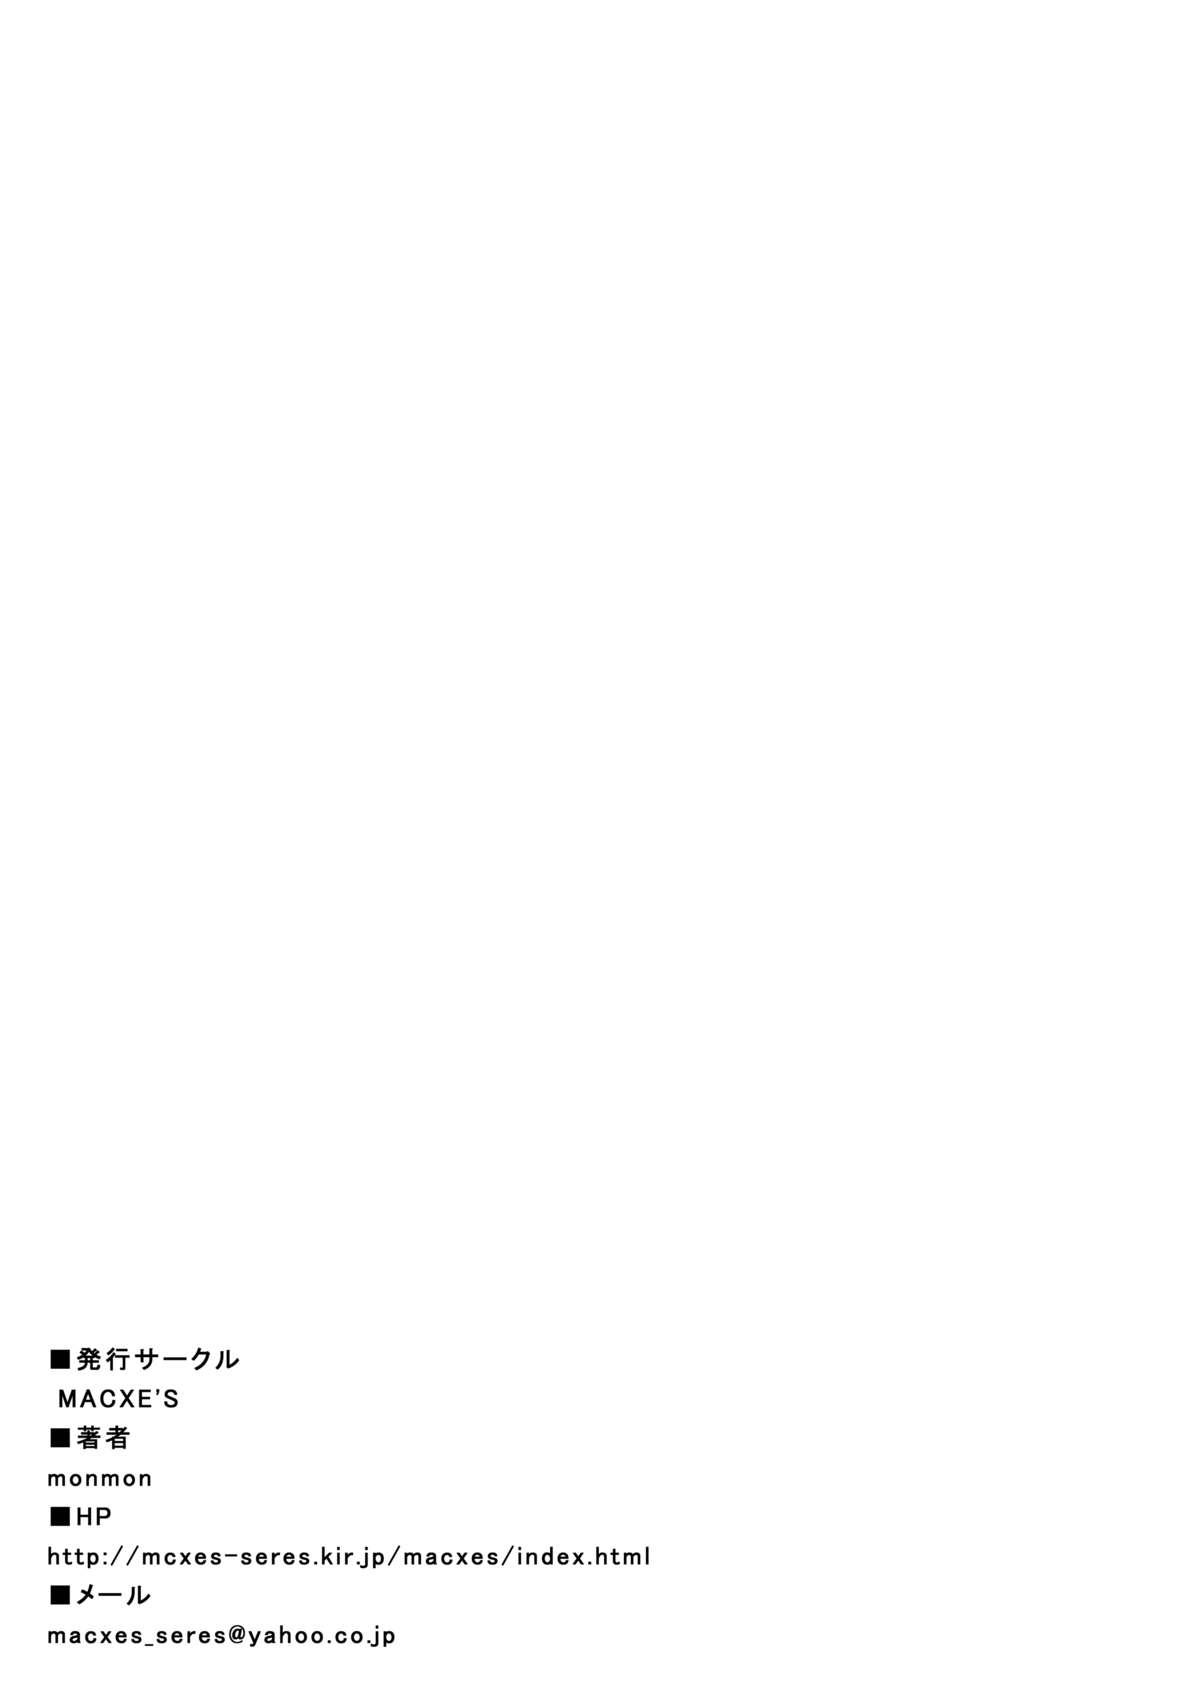 Cdmx [MACXE'S (monmon)] Mou Hitotsu no Ketsumatsu ~Henshin Heroine Kairaku Sennou Yes!! Precure 5 Hen~ Daisanwa (Yes! Precure 5) - Yes precure 5 Negra - Page 35